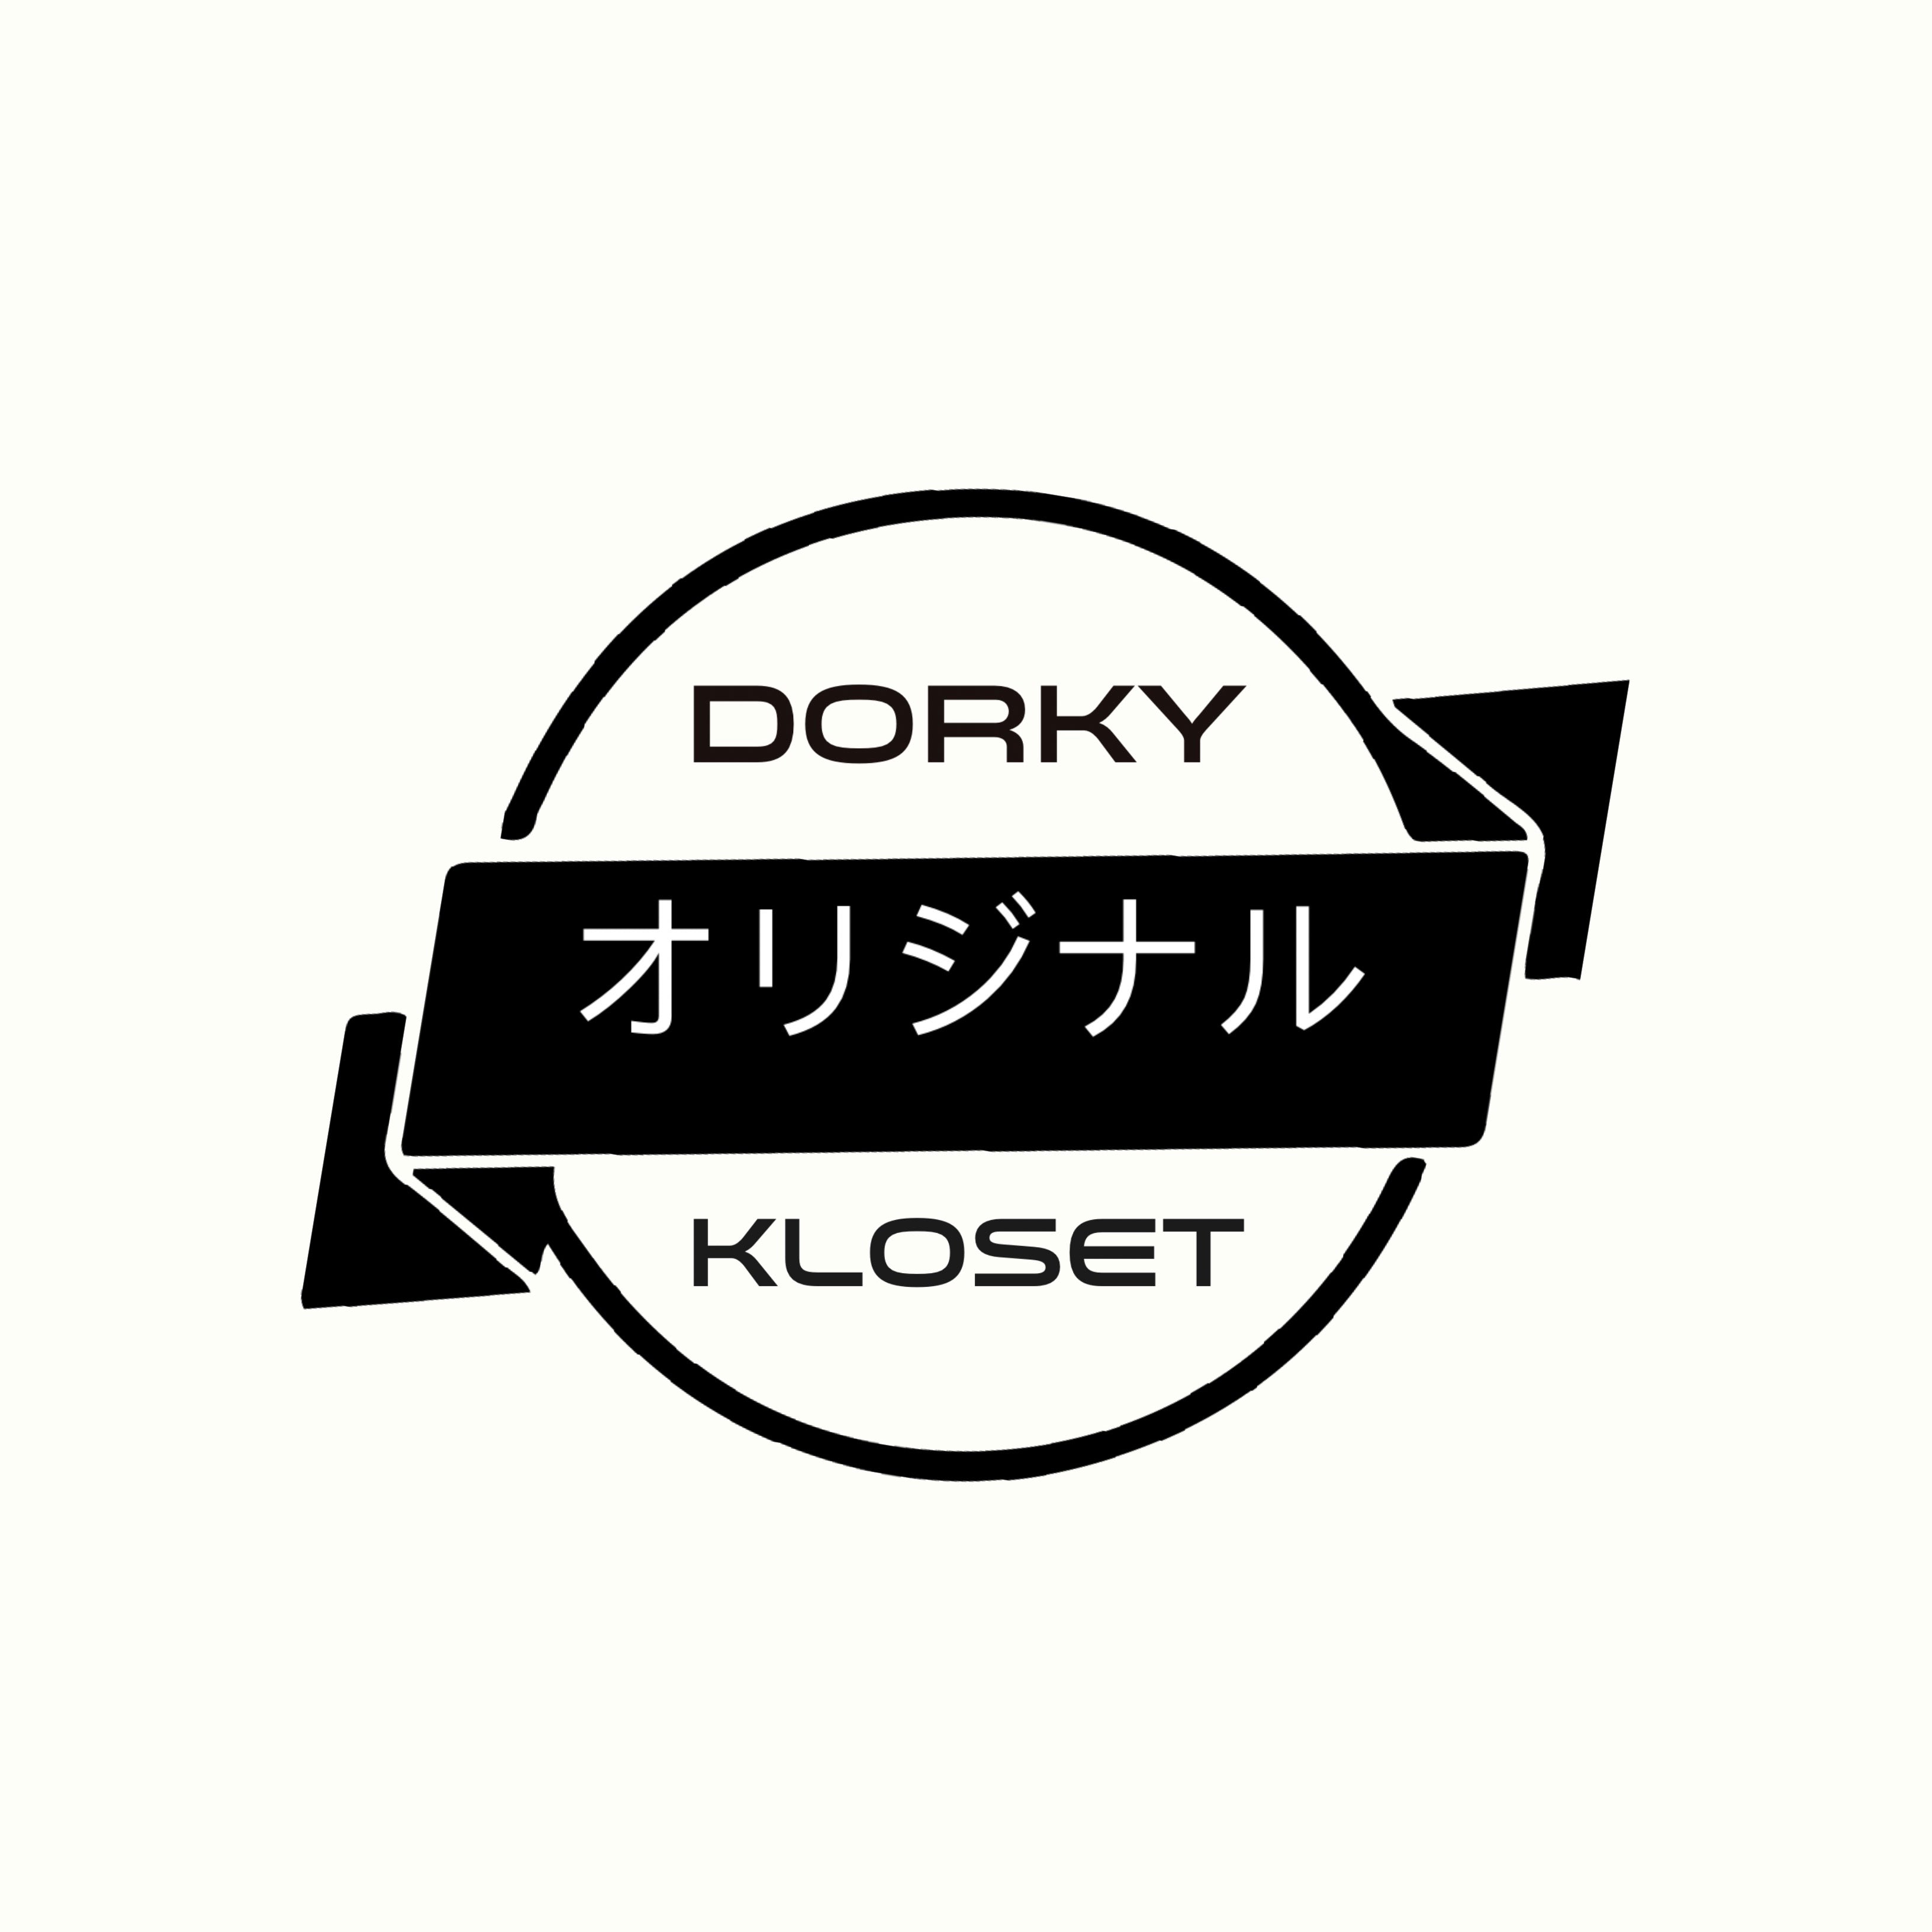 Dorky Kloset